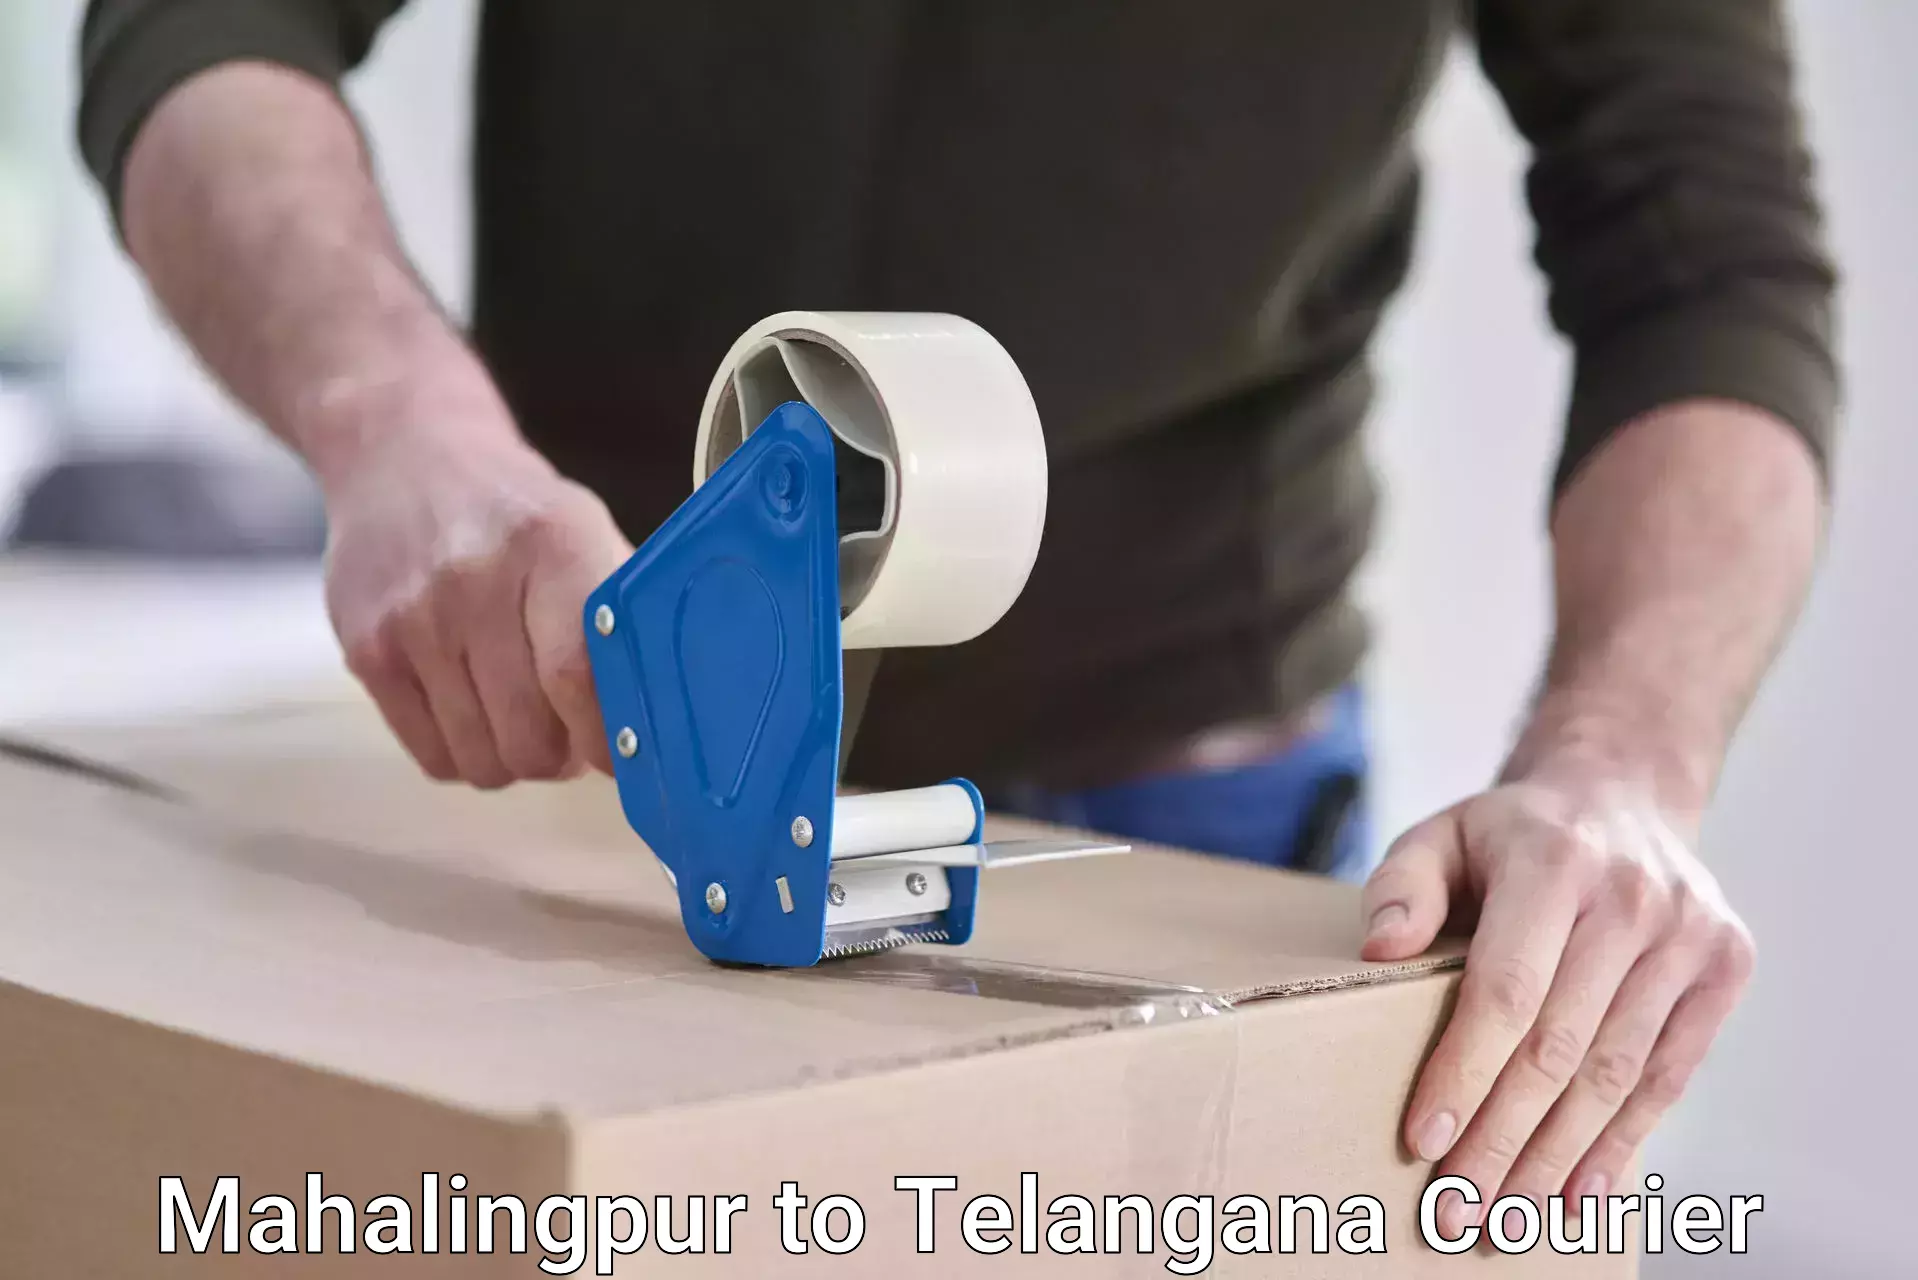 Tech-enabled shipping Mahalingpur to Telangana